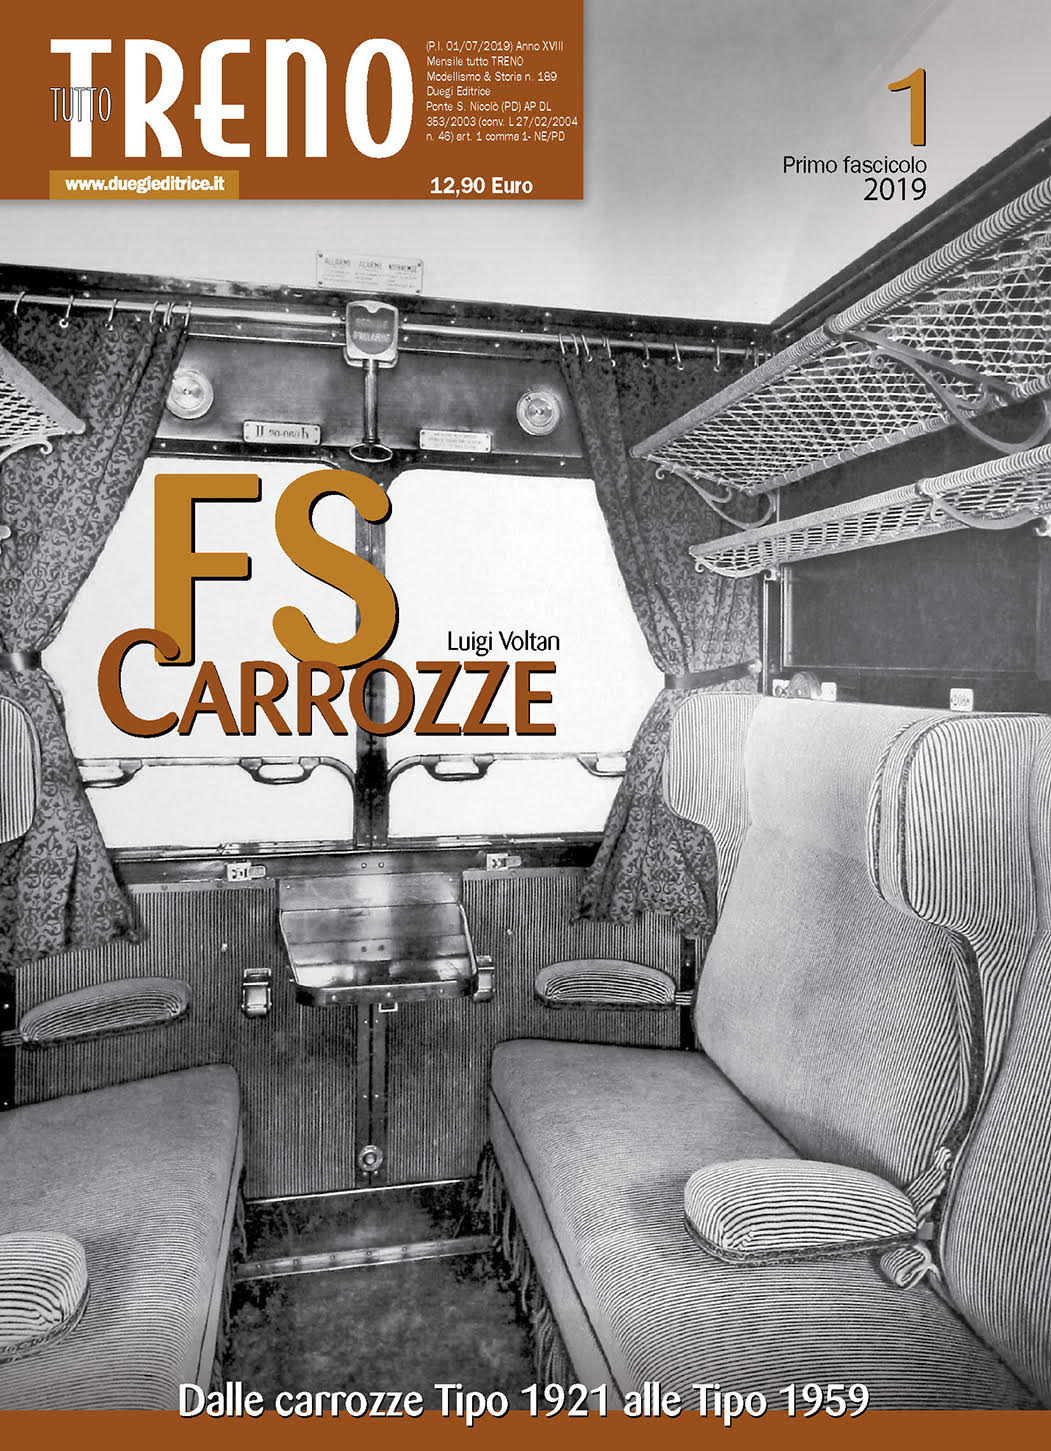 CARROZZE FS - Volume 1.jpg